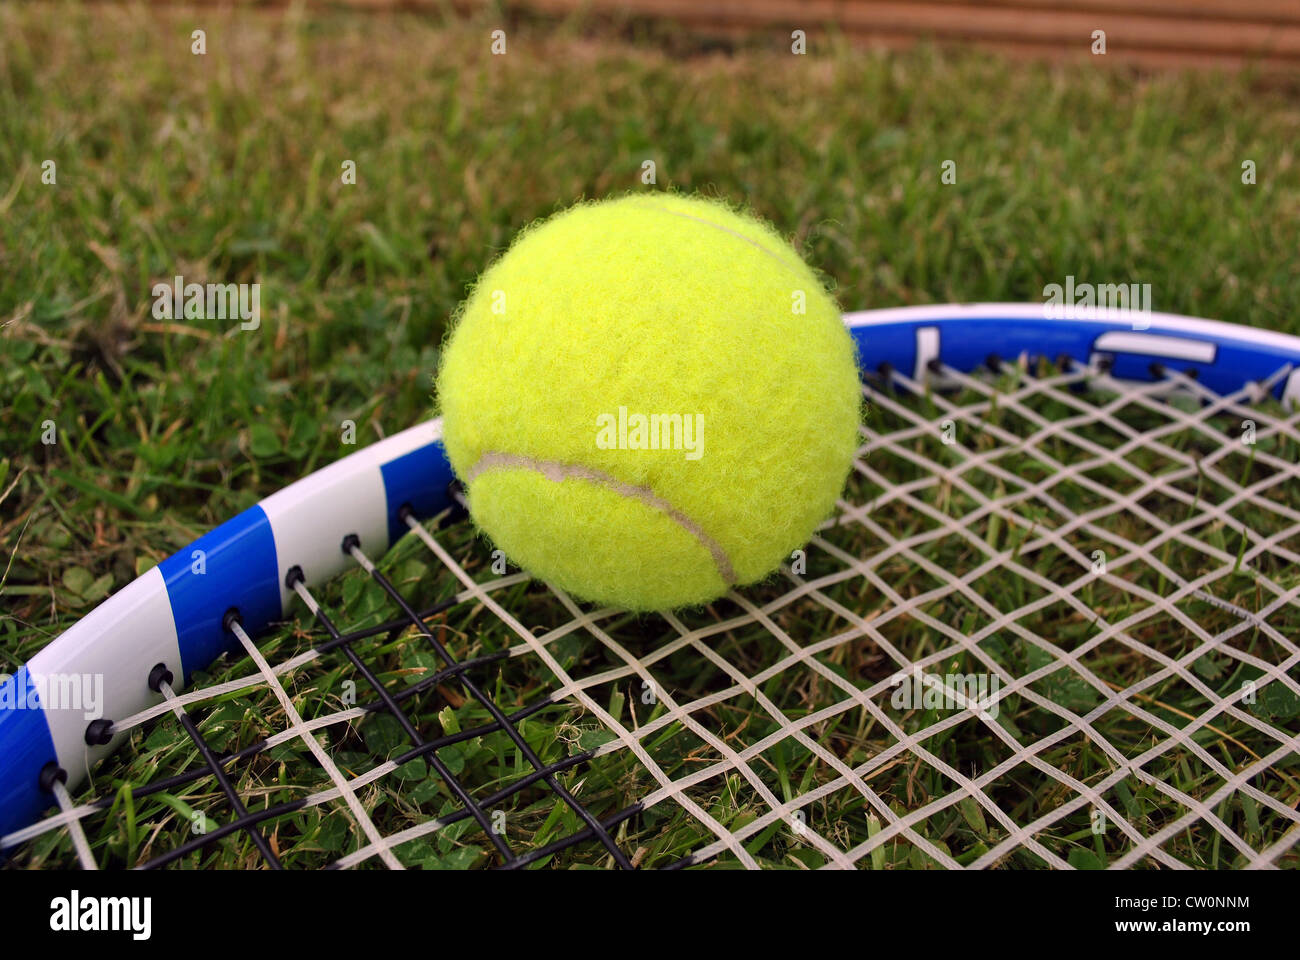 Balle de tennis et une raquette de tennis sur gazon Banque D'Images